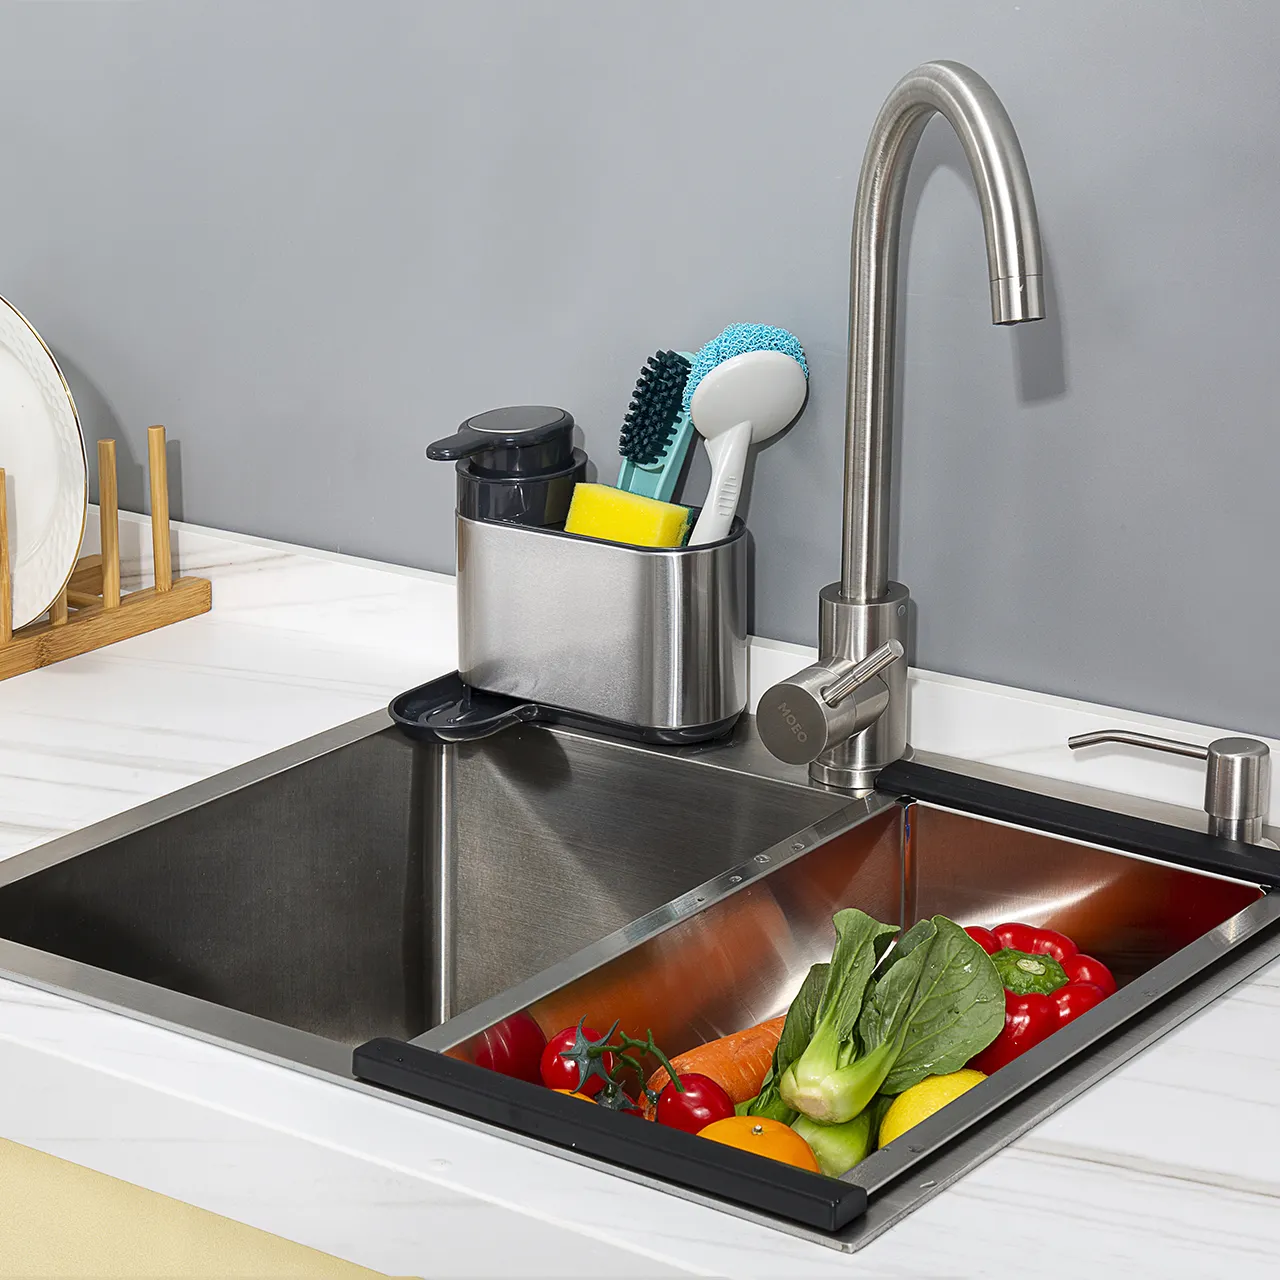 Stainless steel SS kitchen sink ware drainer rack organizer tidy caddy with sponge holder sink organizer